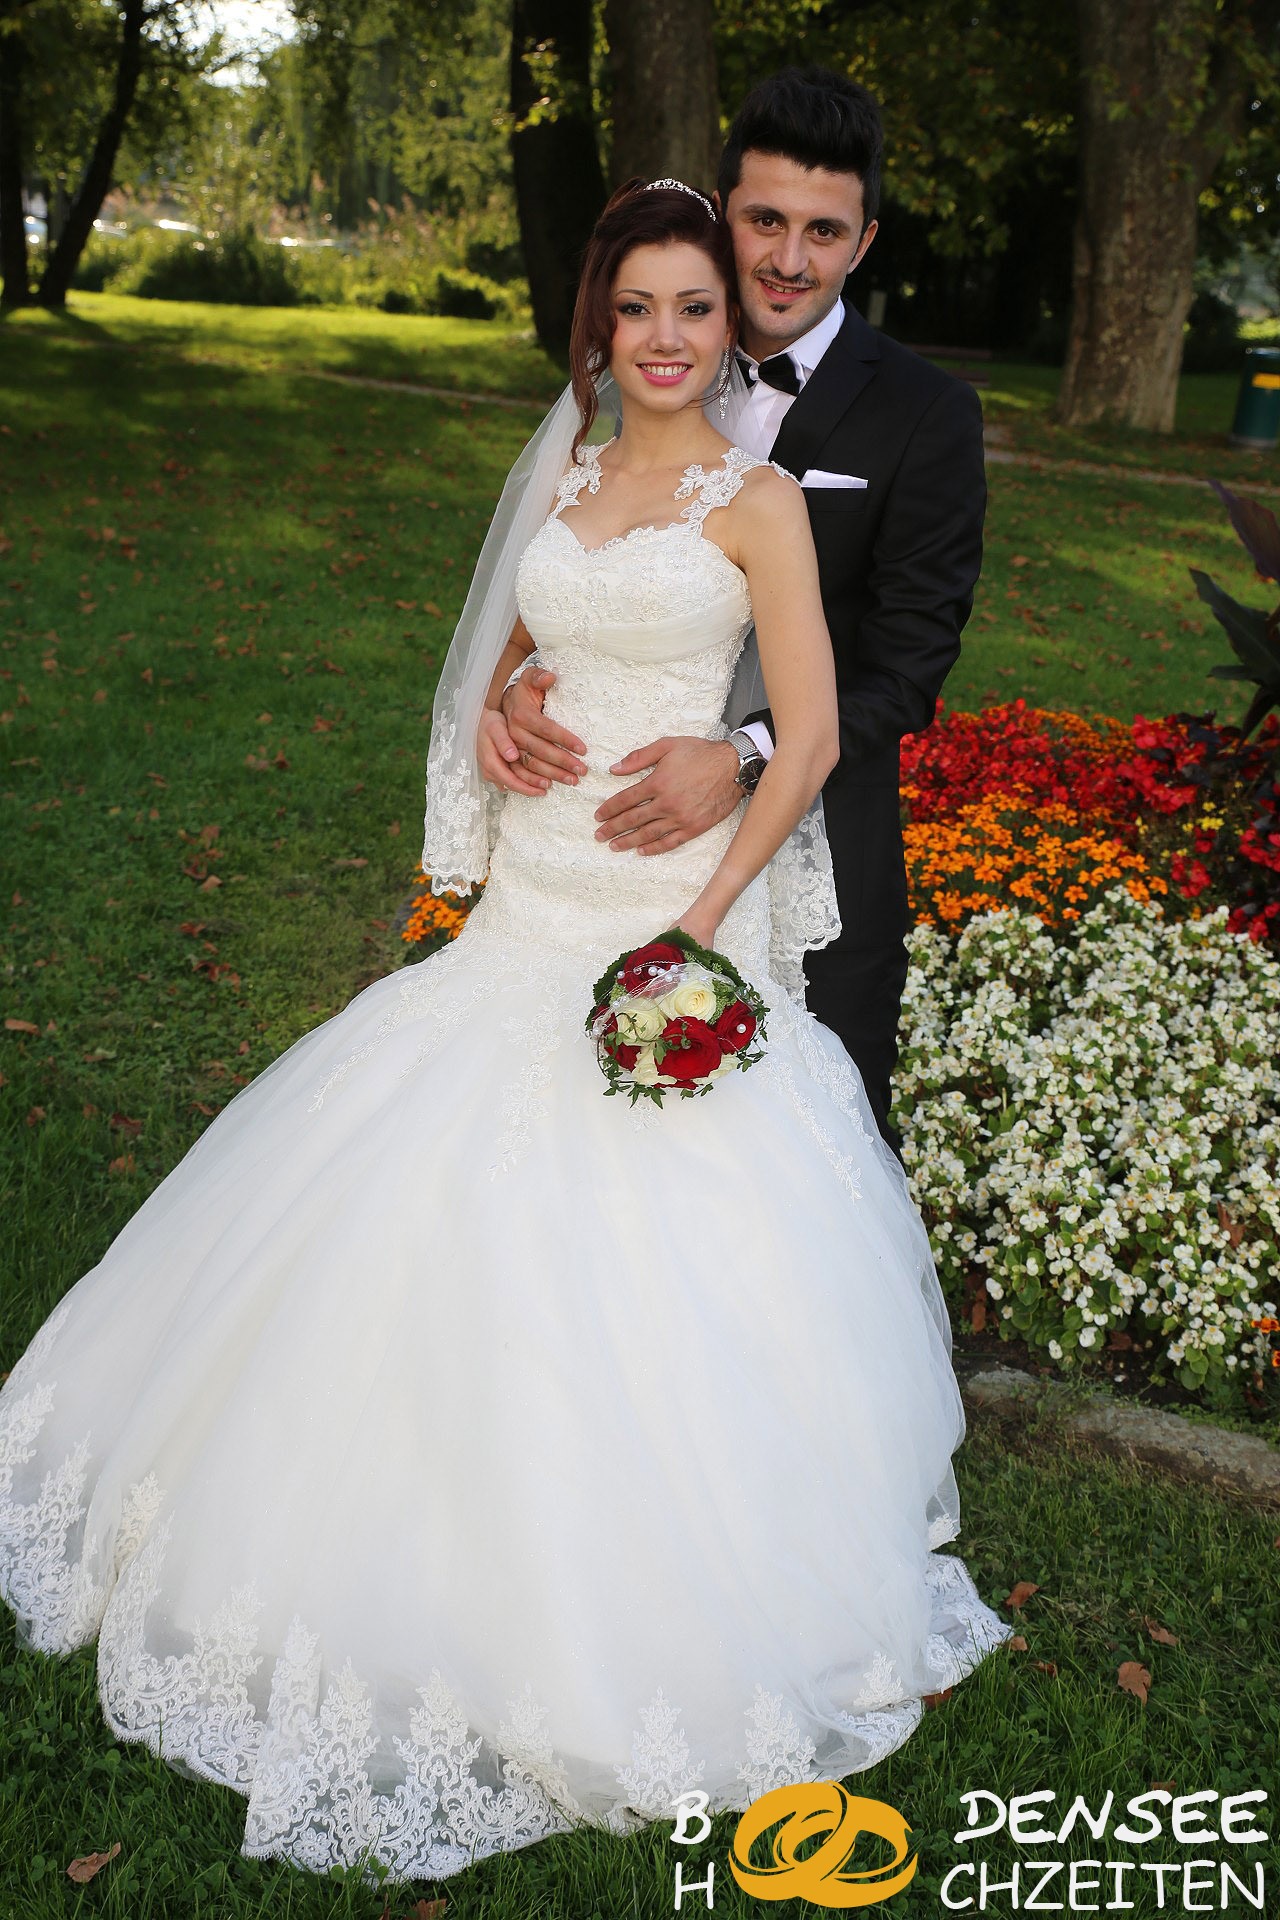 2014 09 06 Hochzeit Hohenems Sercan Muazzez BODENSEE HOCHZEITEN COM IMG 8450